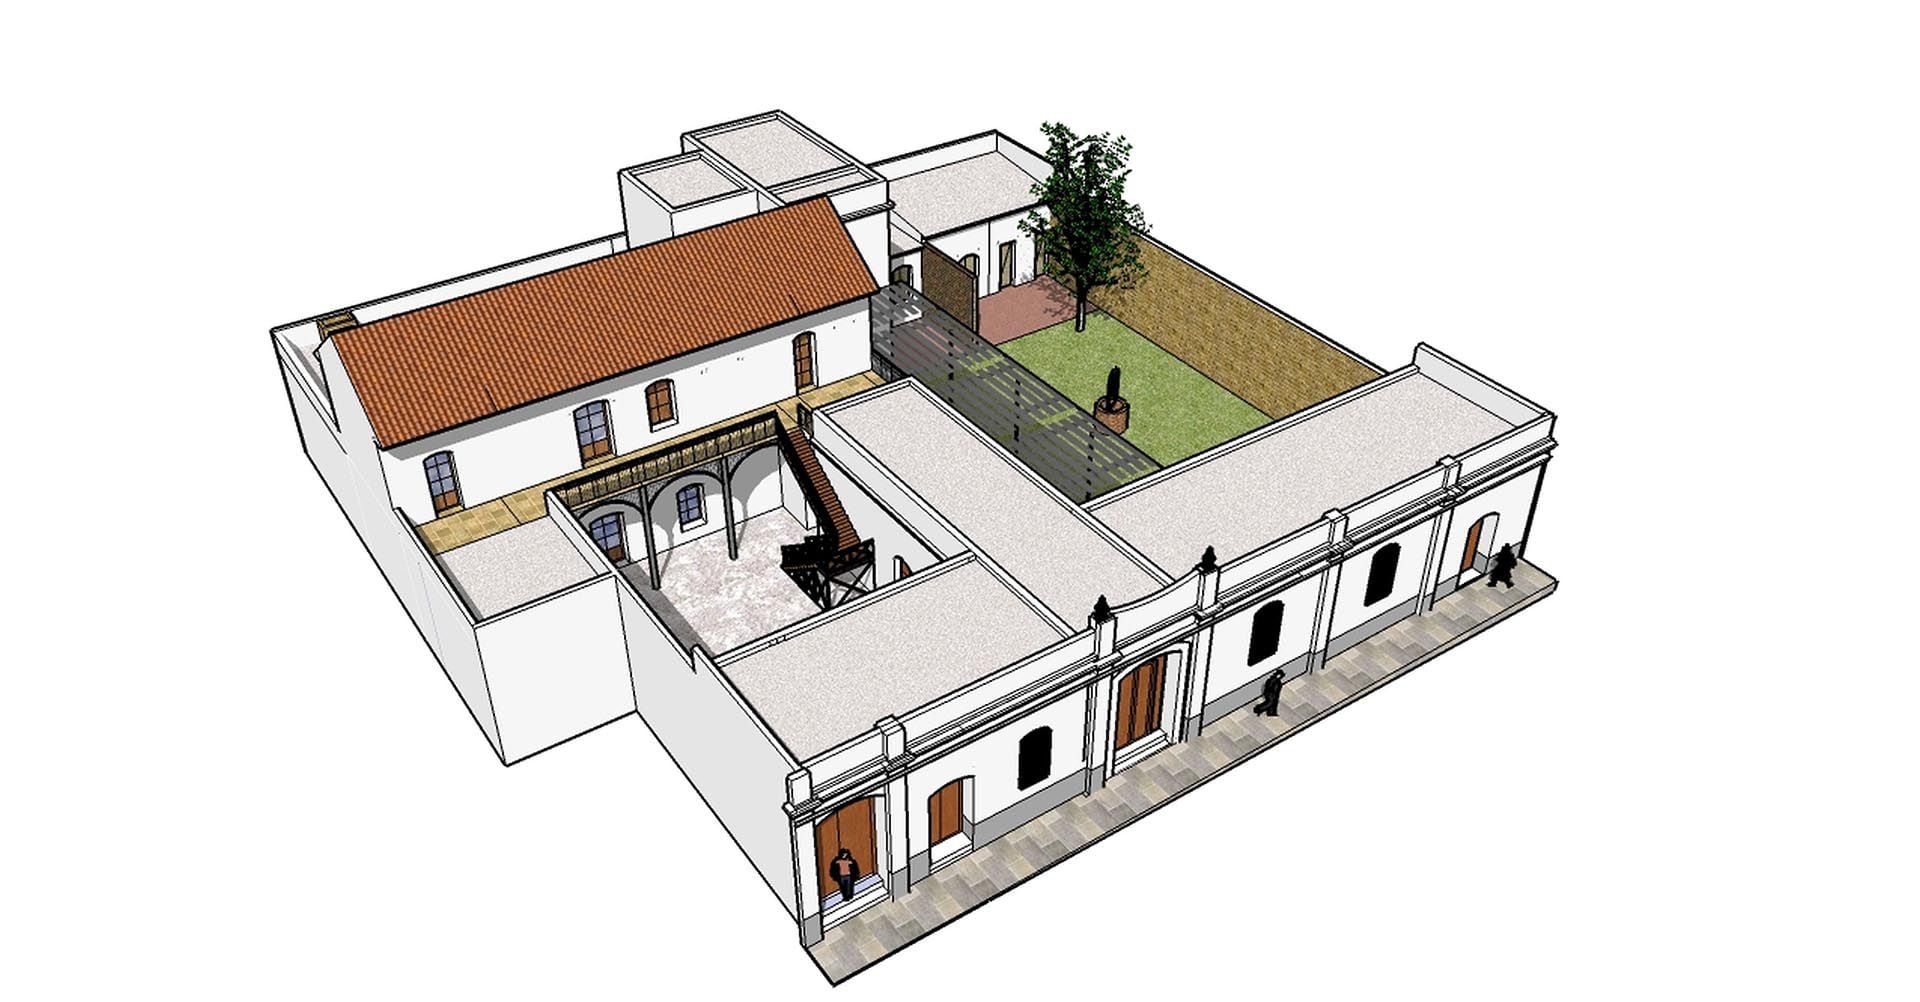 Otro corte digital de cómo era la antigua vivienda y un aljibe en uno de sus patios (Colimodio-Maddonni)